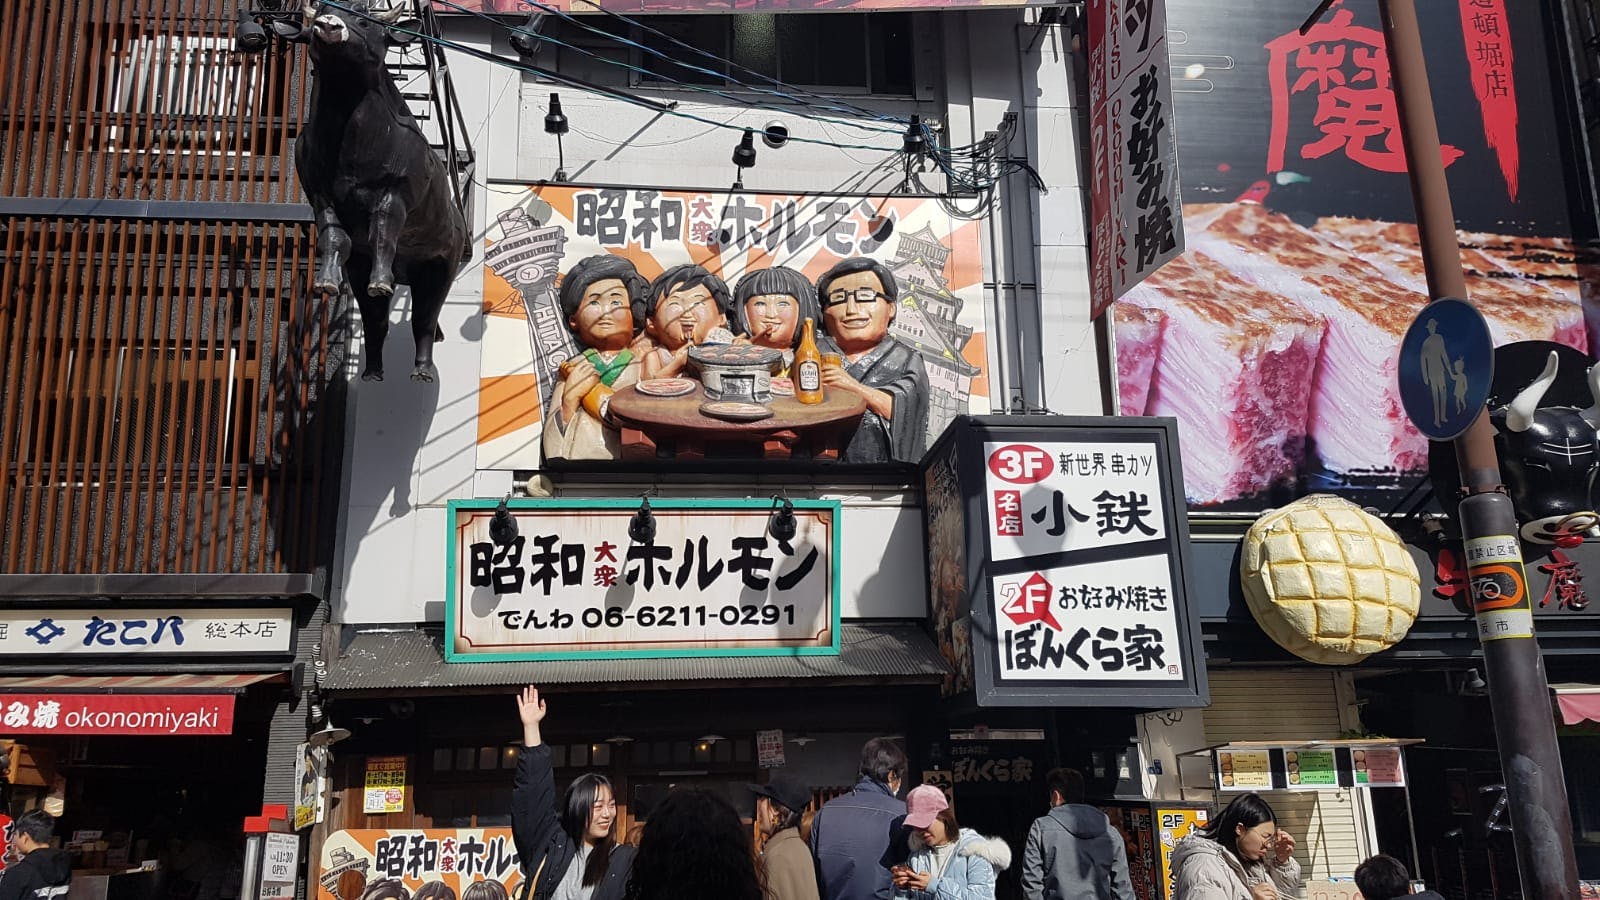 Popularna japońska żywność w Osace pochodzi z gry miejskiej i wycieczki